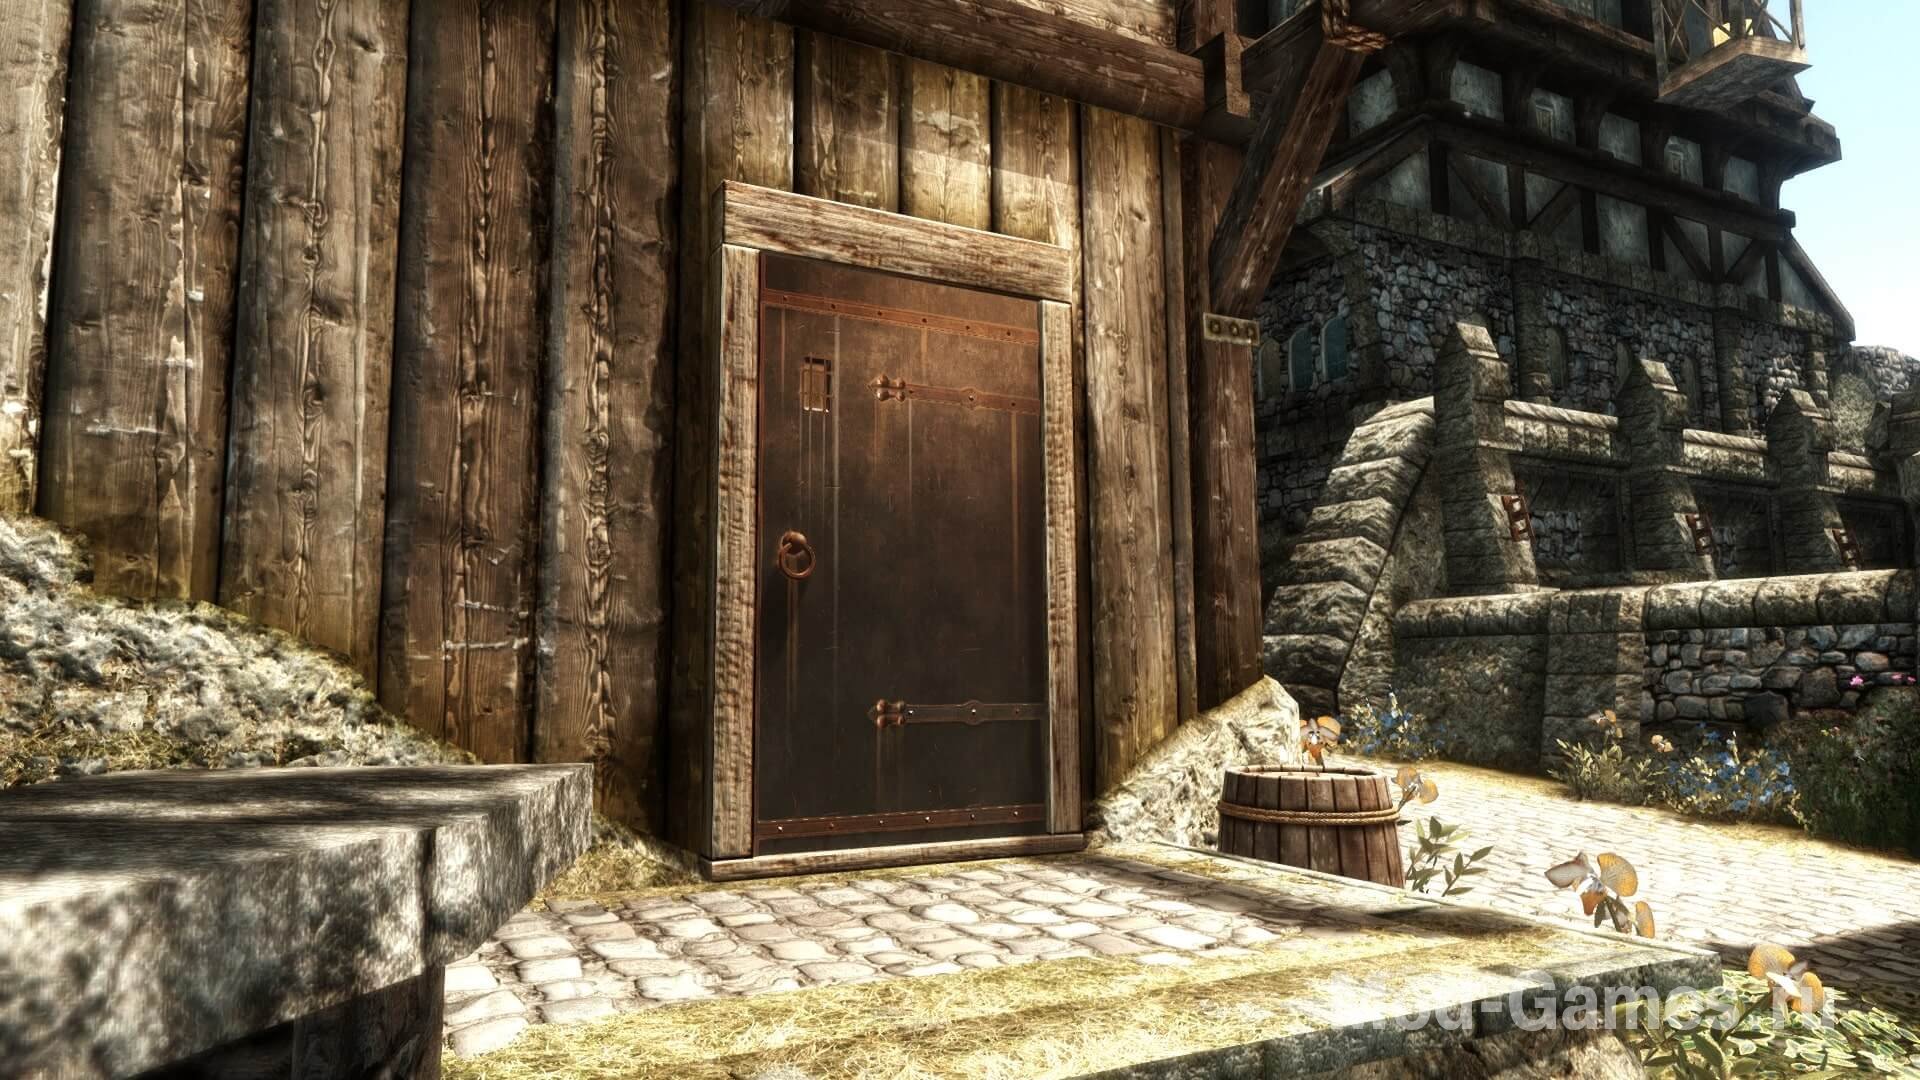 Великолепные двери Скайрима